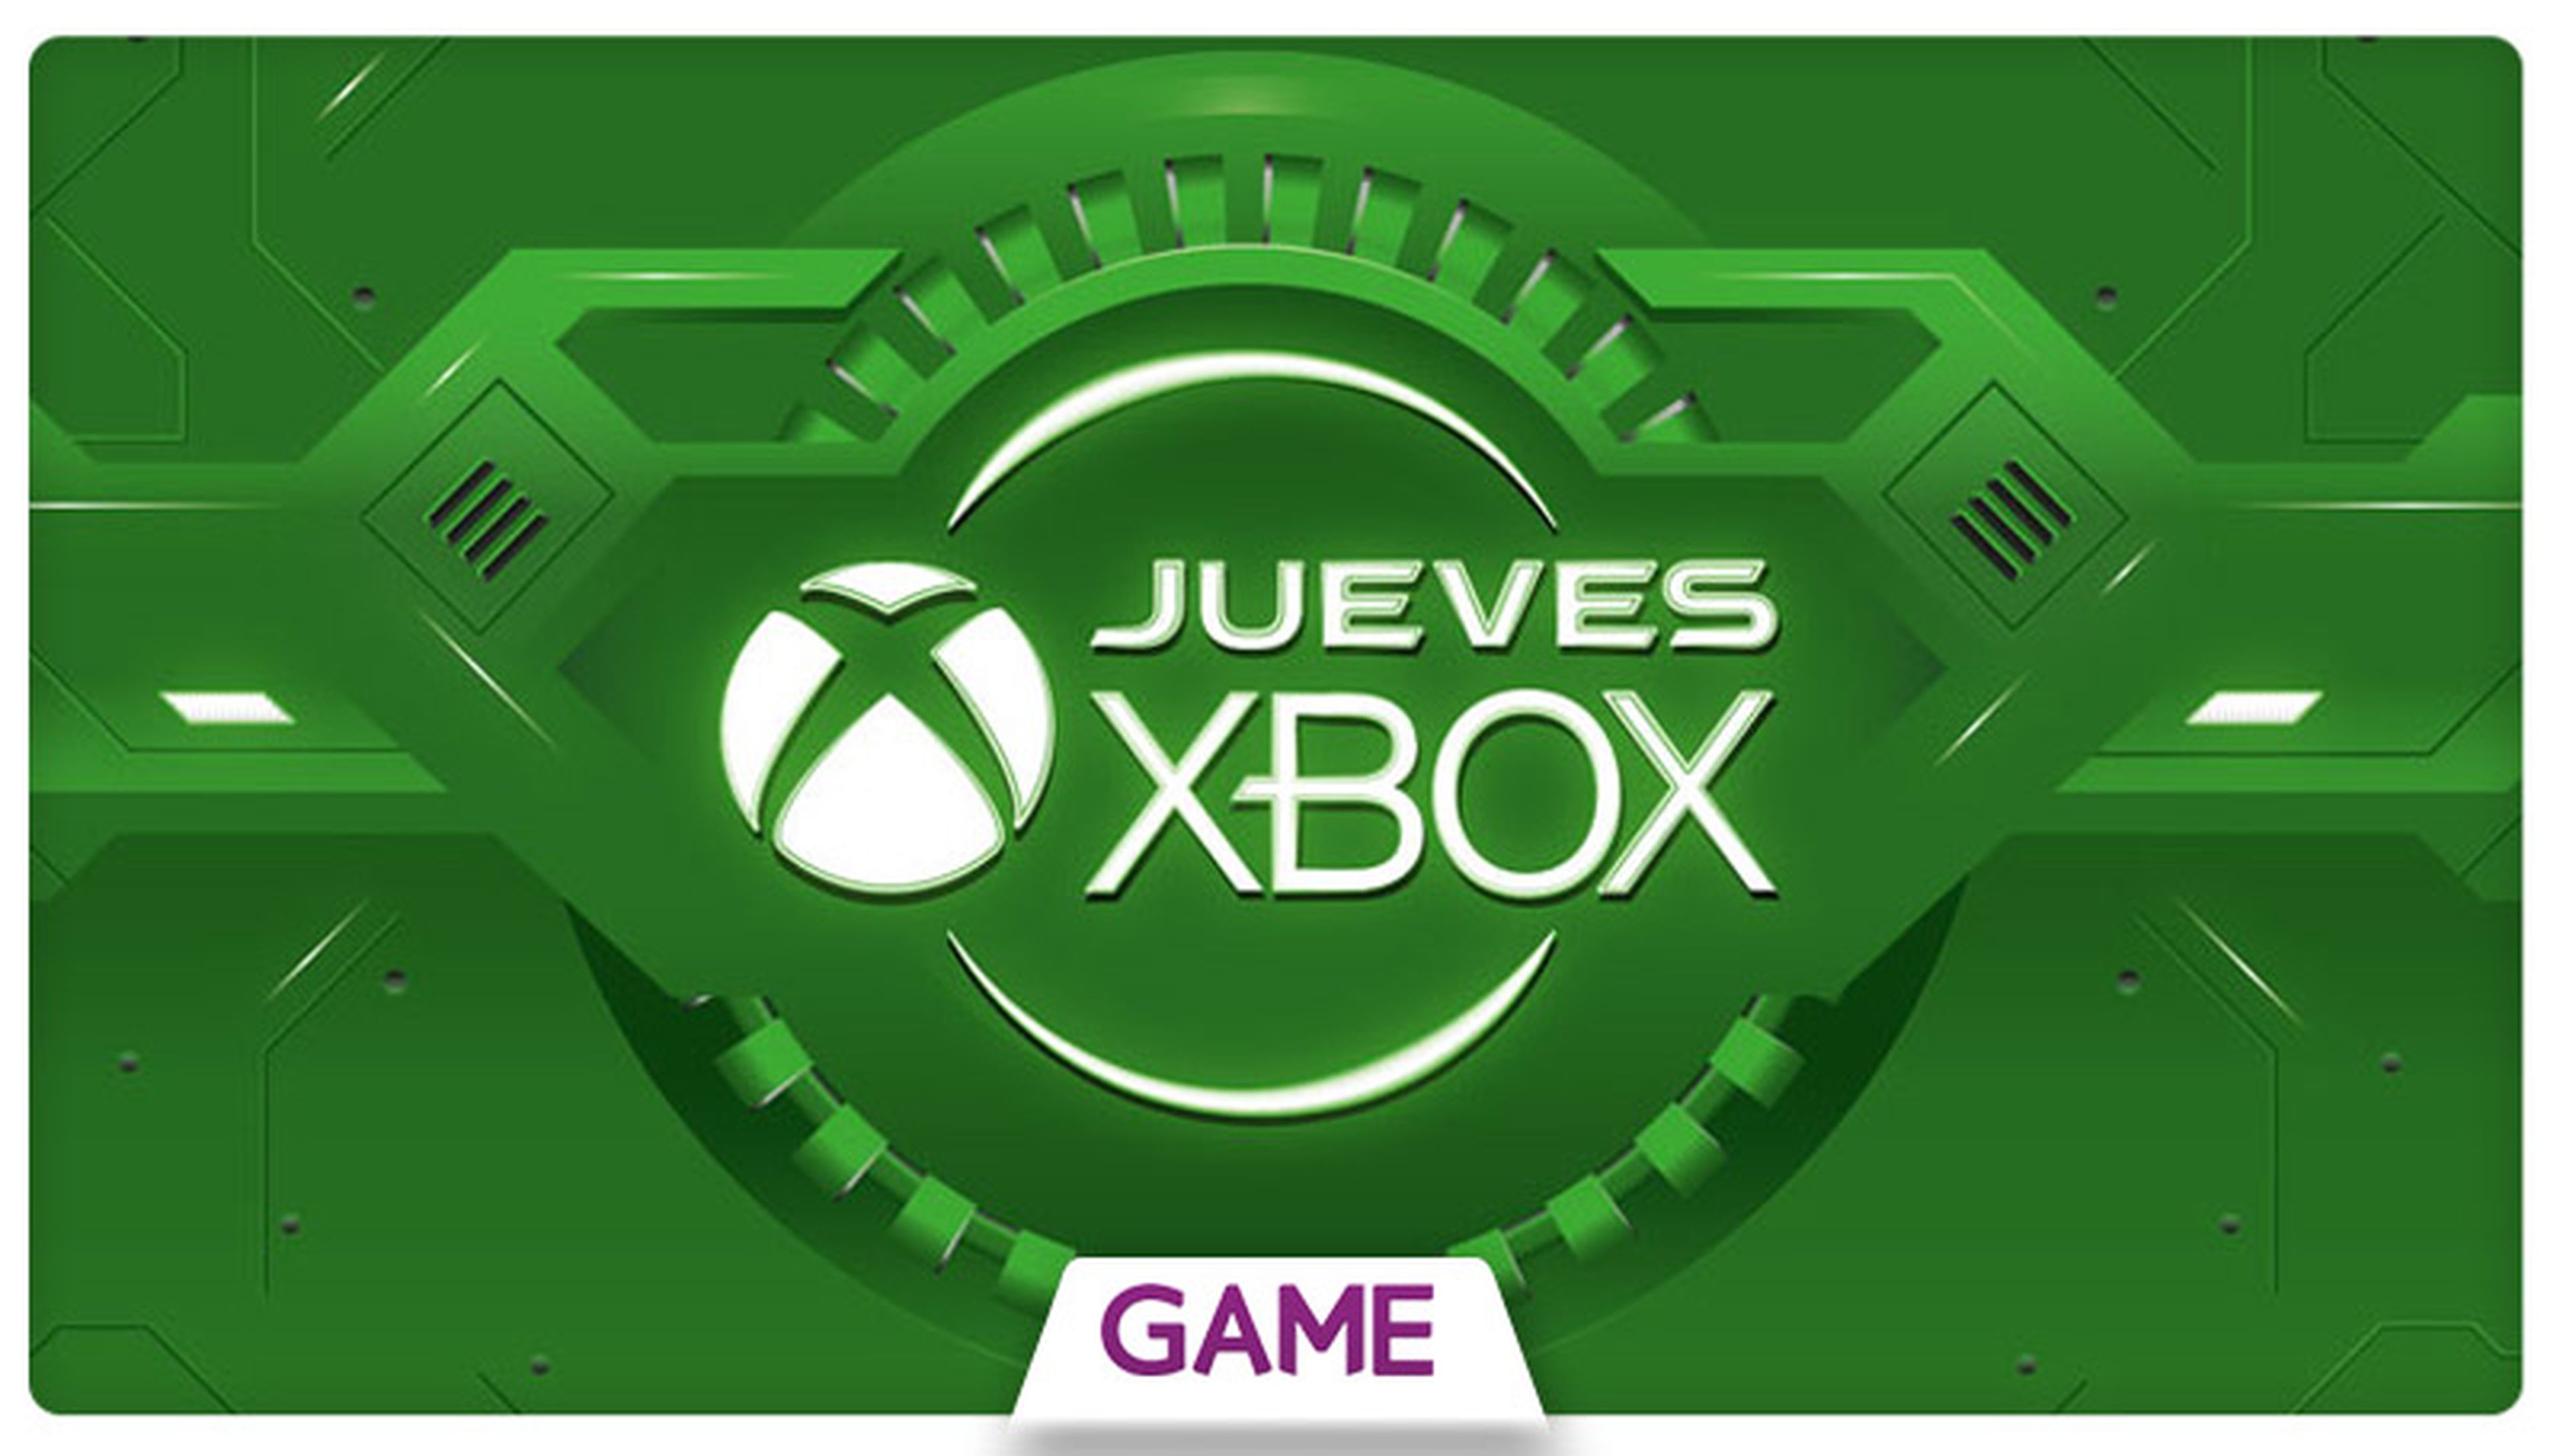 Jueves Xbox en GAME: Ofertas del 30/07/2015